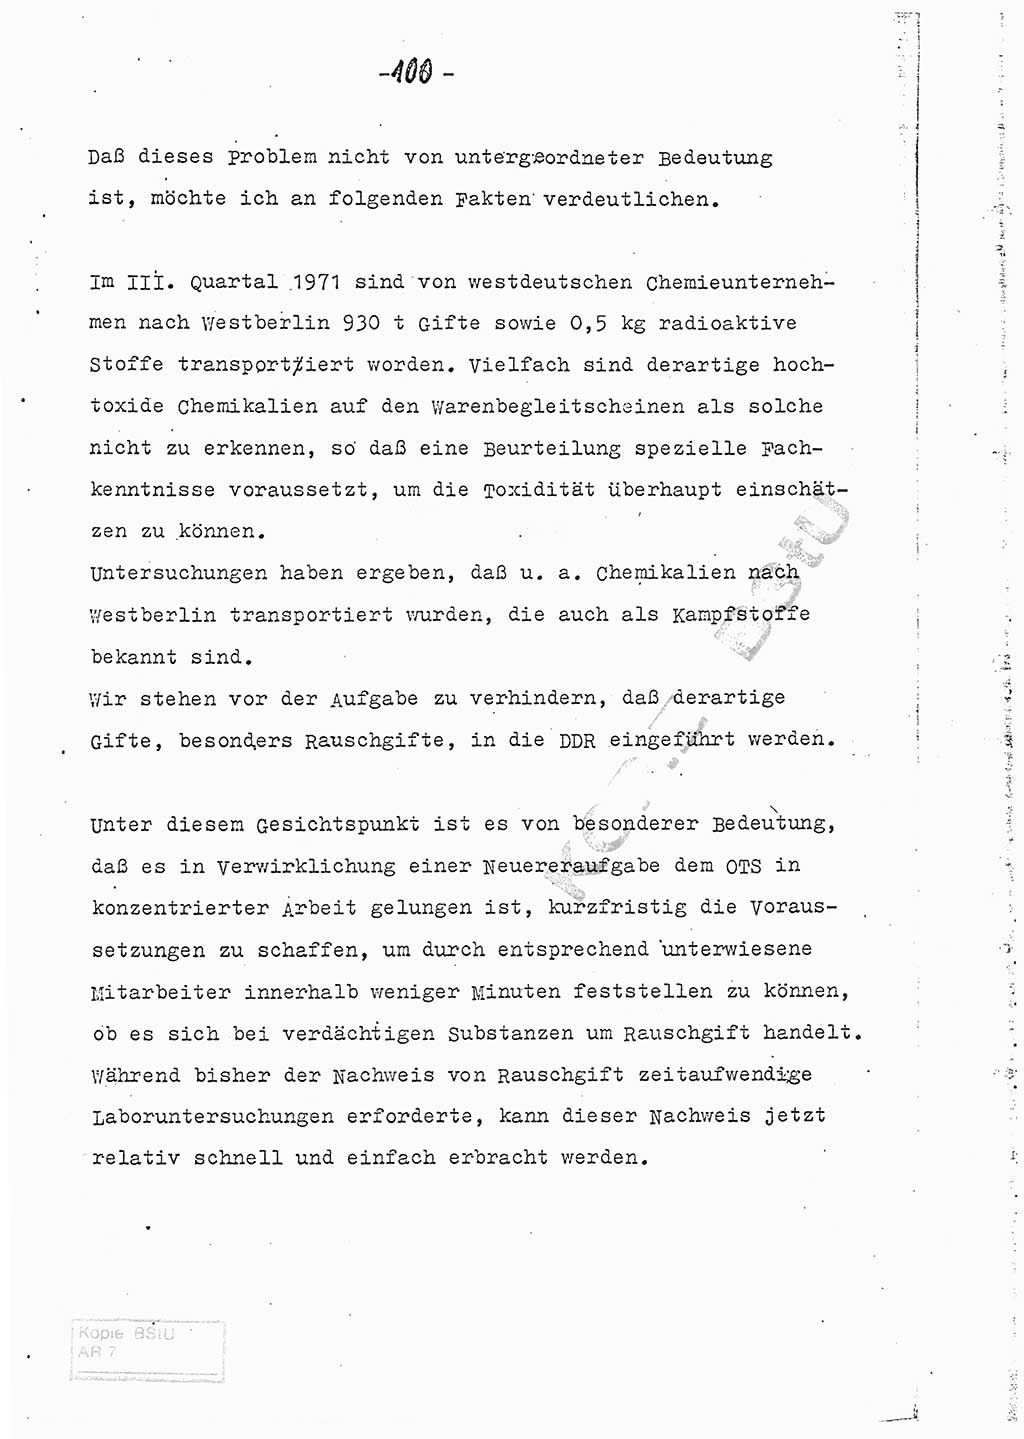 Referat (Entwurf) des Genossen Minister (Generaloberst Erich Mielke) auf der Dienstkonferenz 1972, Ministerium für Staatssicherheit (MfS) [Deutsche Demokratische Republik (DDR)], Der Minister, Geheime Verschlußsache (GVS) 008-150/72, Berlin 25.2.1972, Seite 100 (Ref. Entw. DK MfS DDR Min. GVS 008-150/72 1972, S. 100)